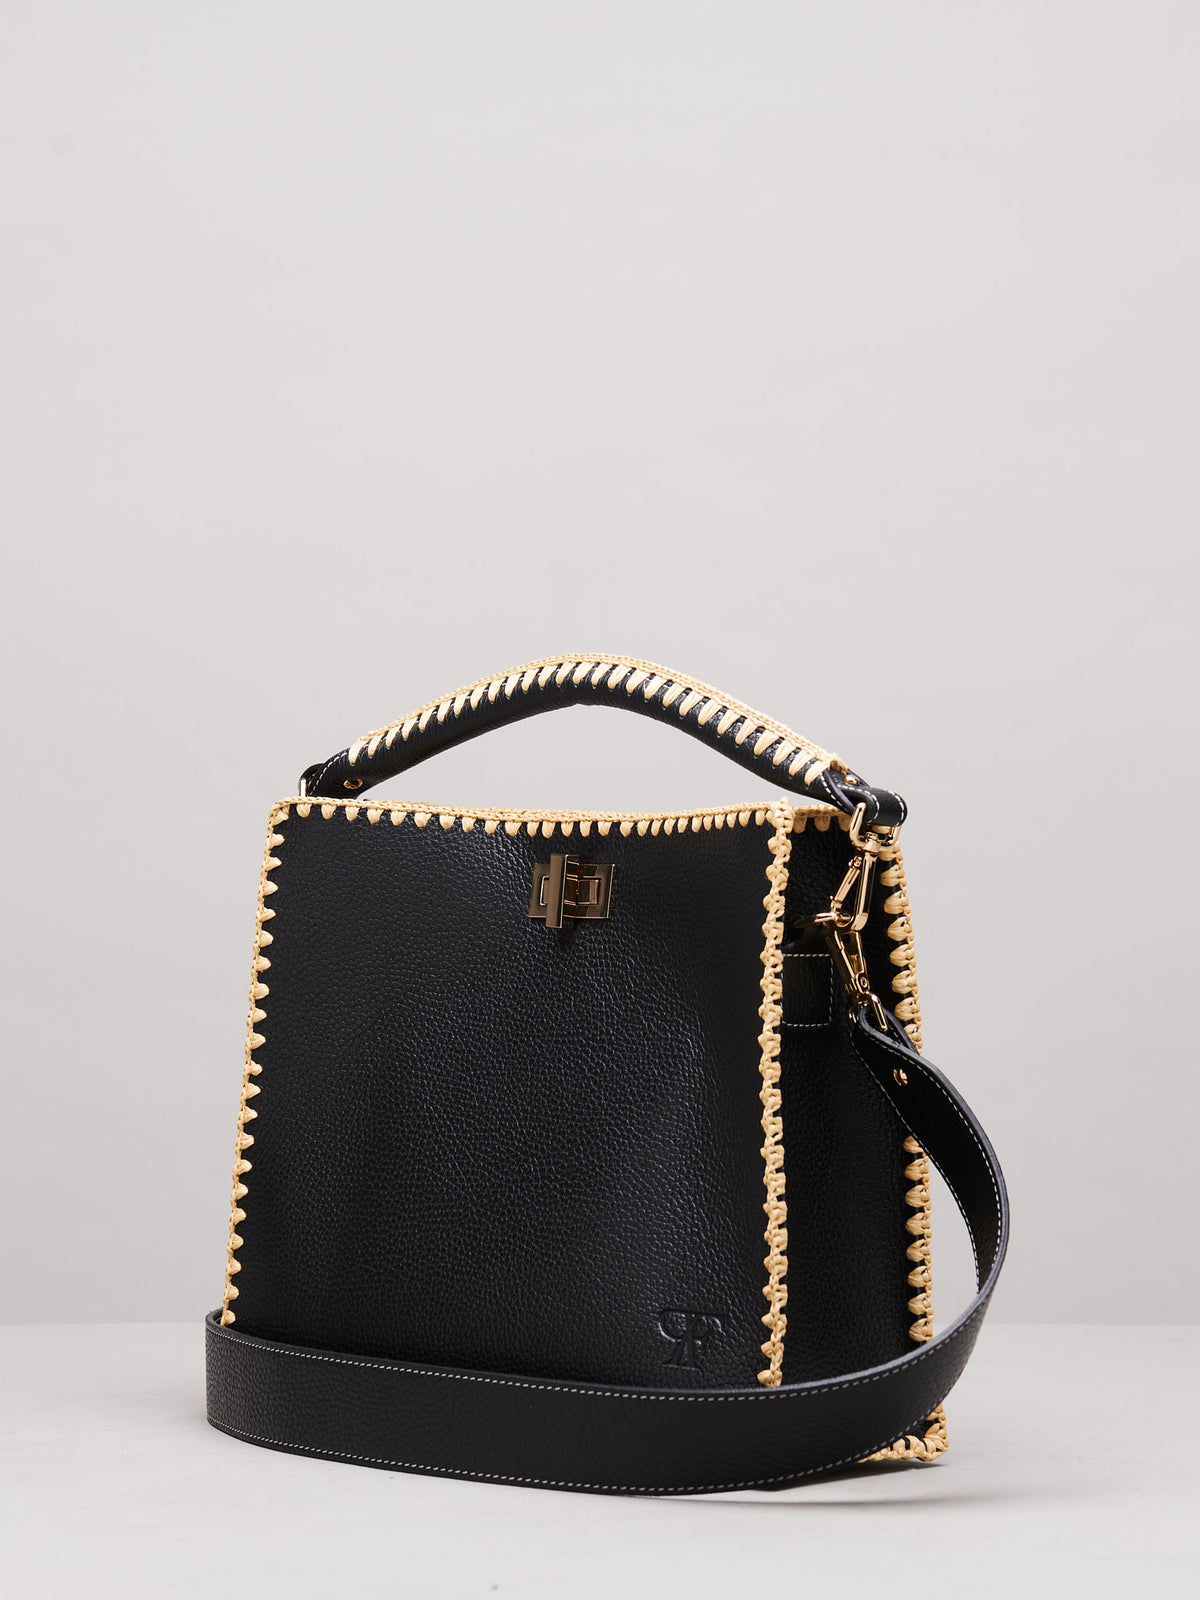 Sylvia Grande Handbag in Black